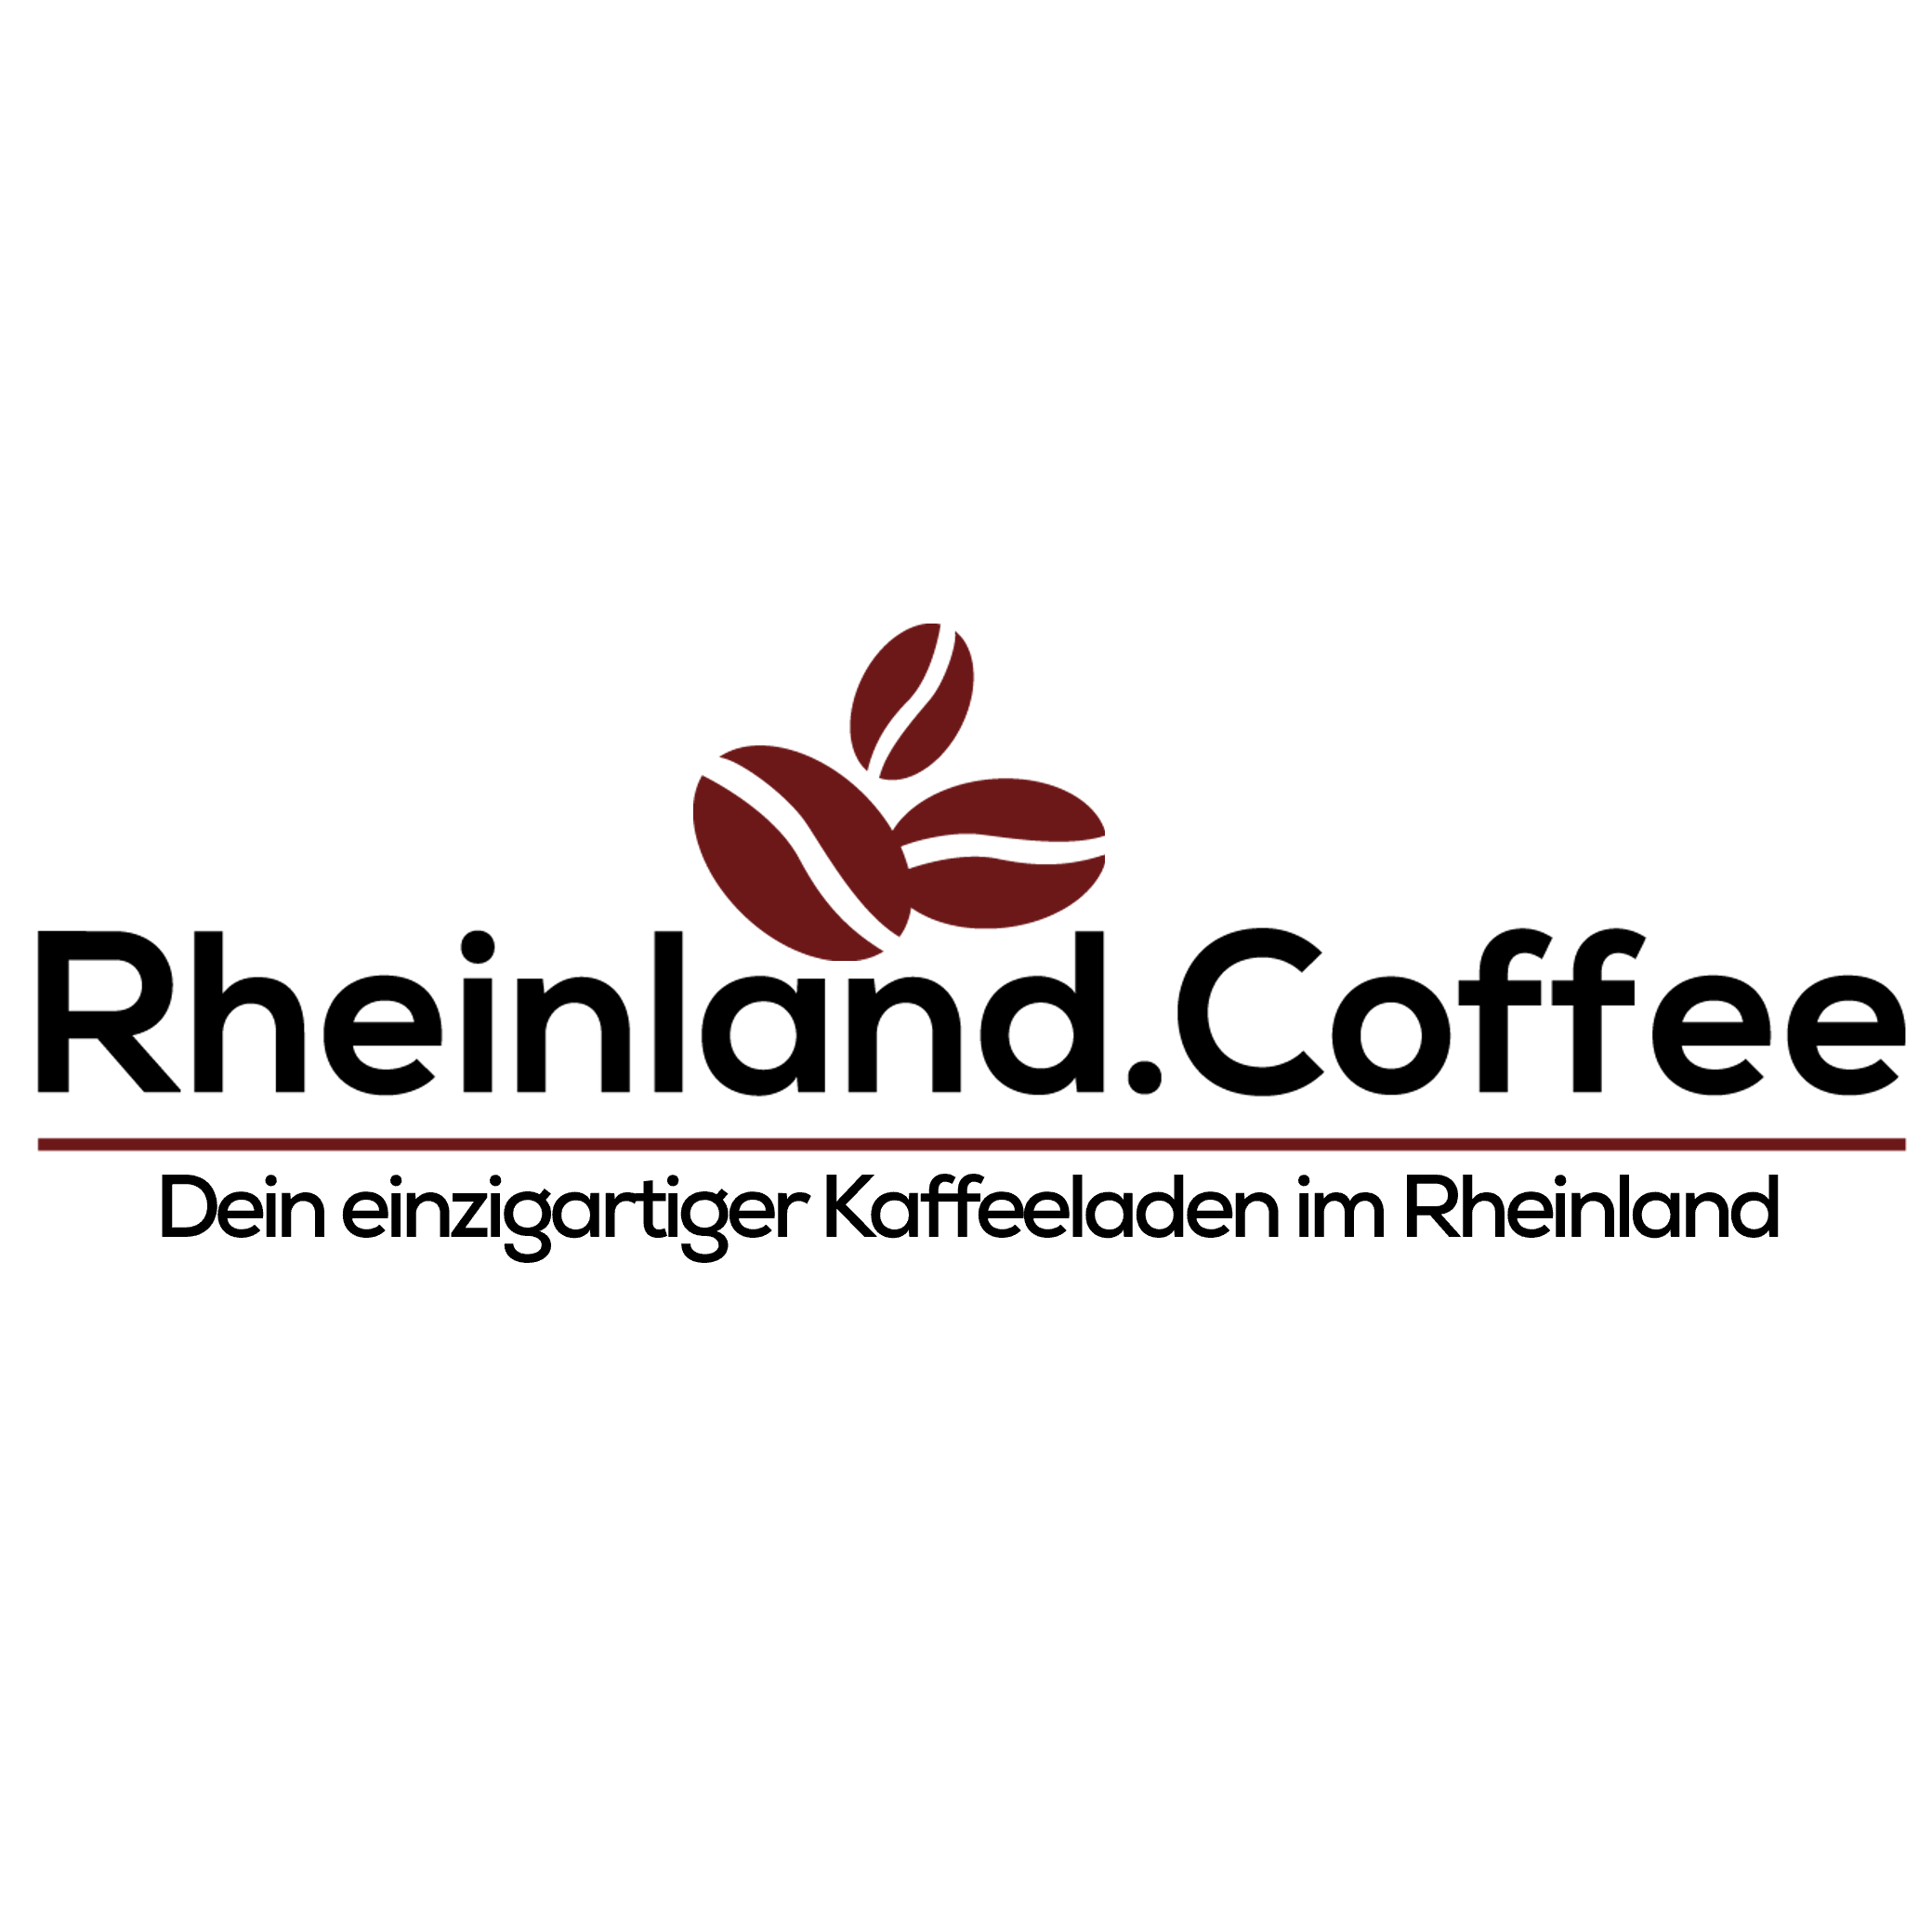 Rheinland.Coffee GmbH